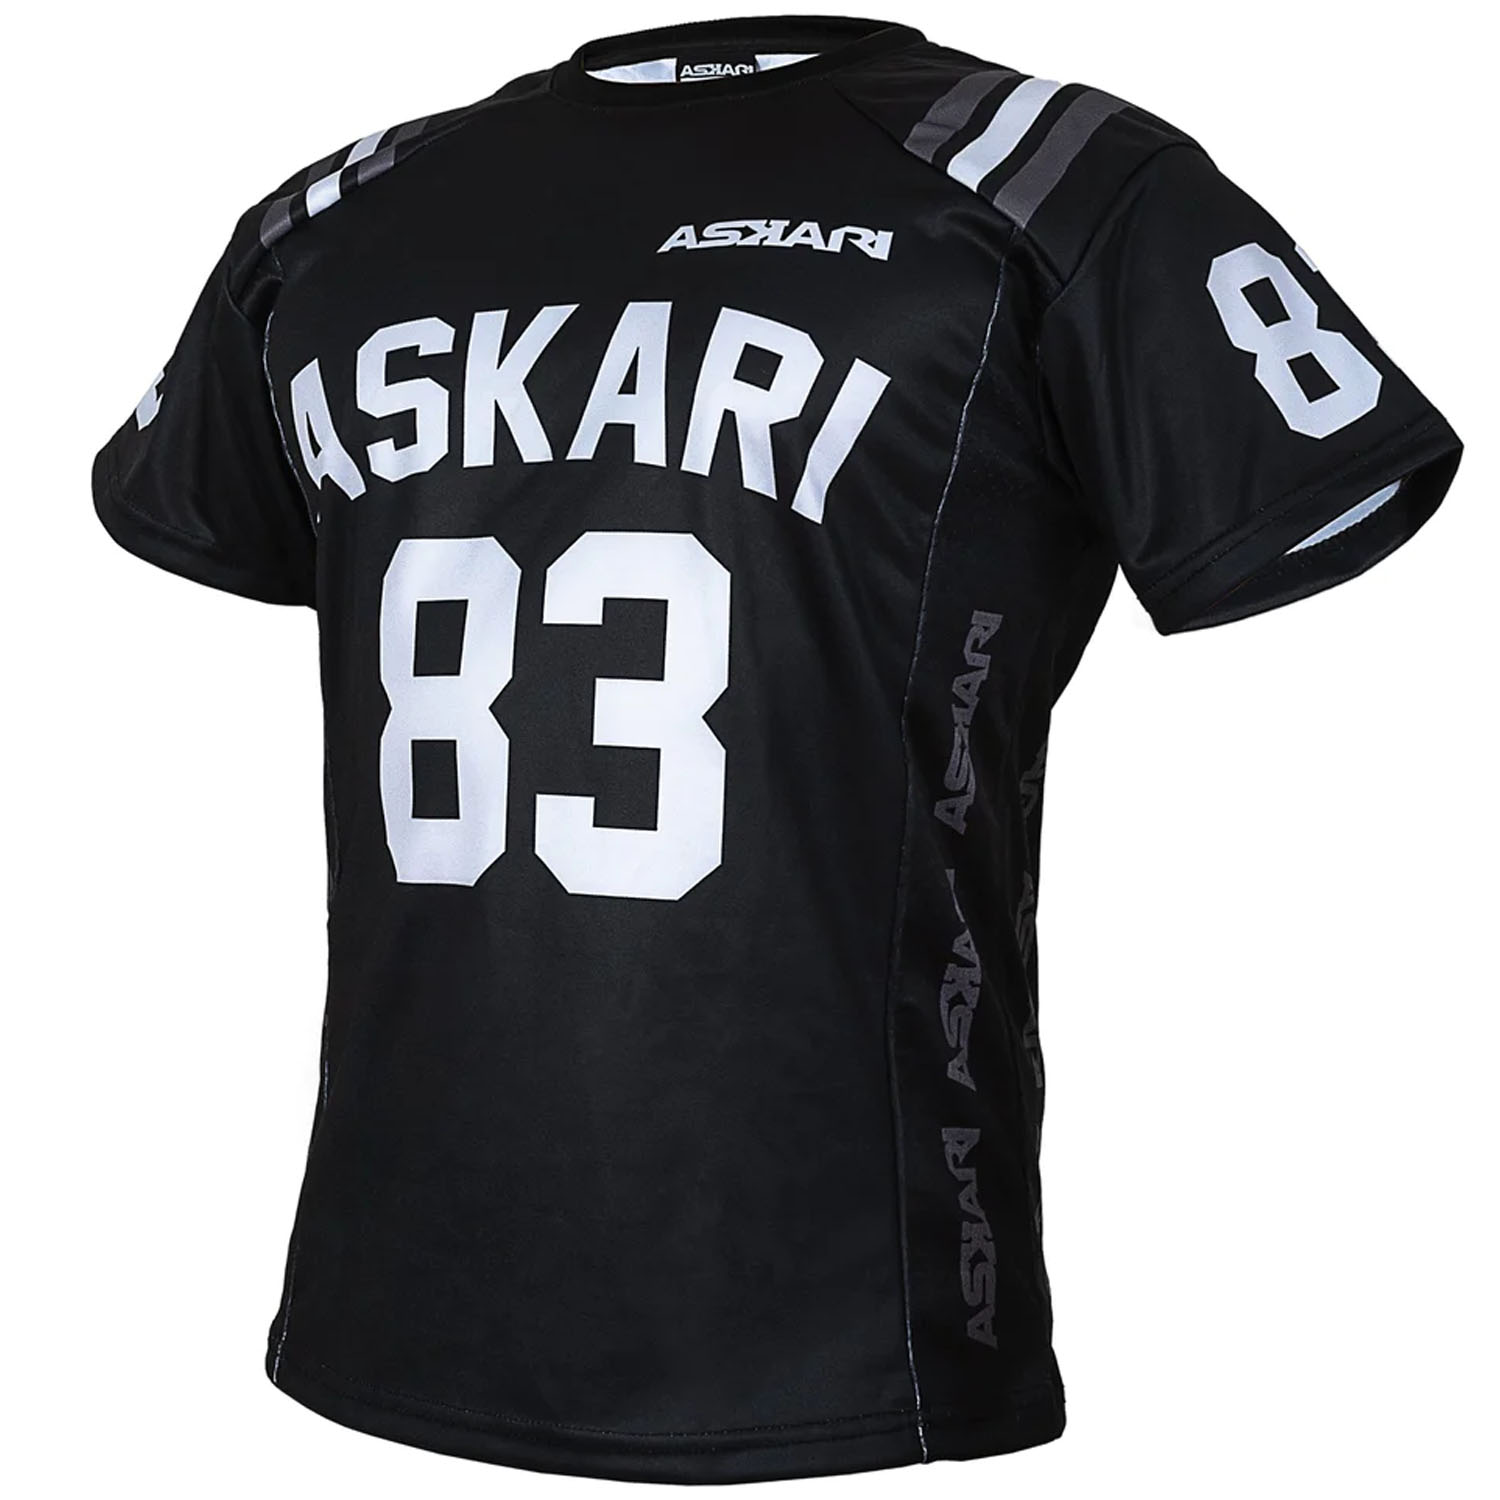 ASKARI, Fitness Shirt, Askari 83, schwarz-weiß